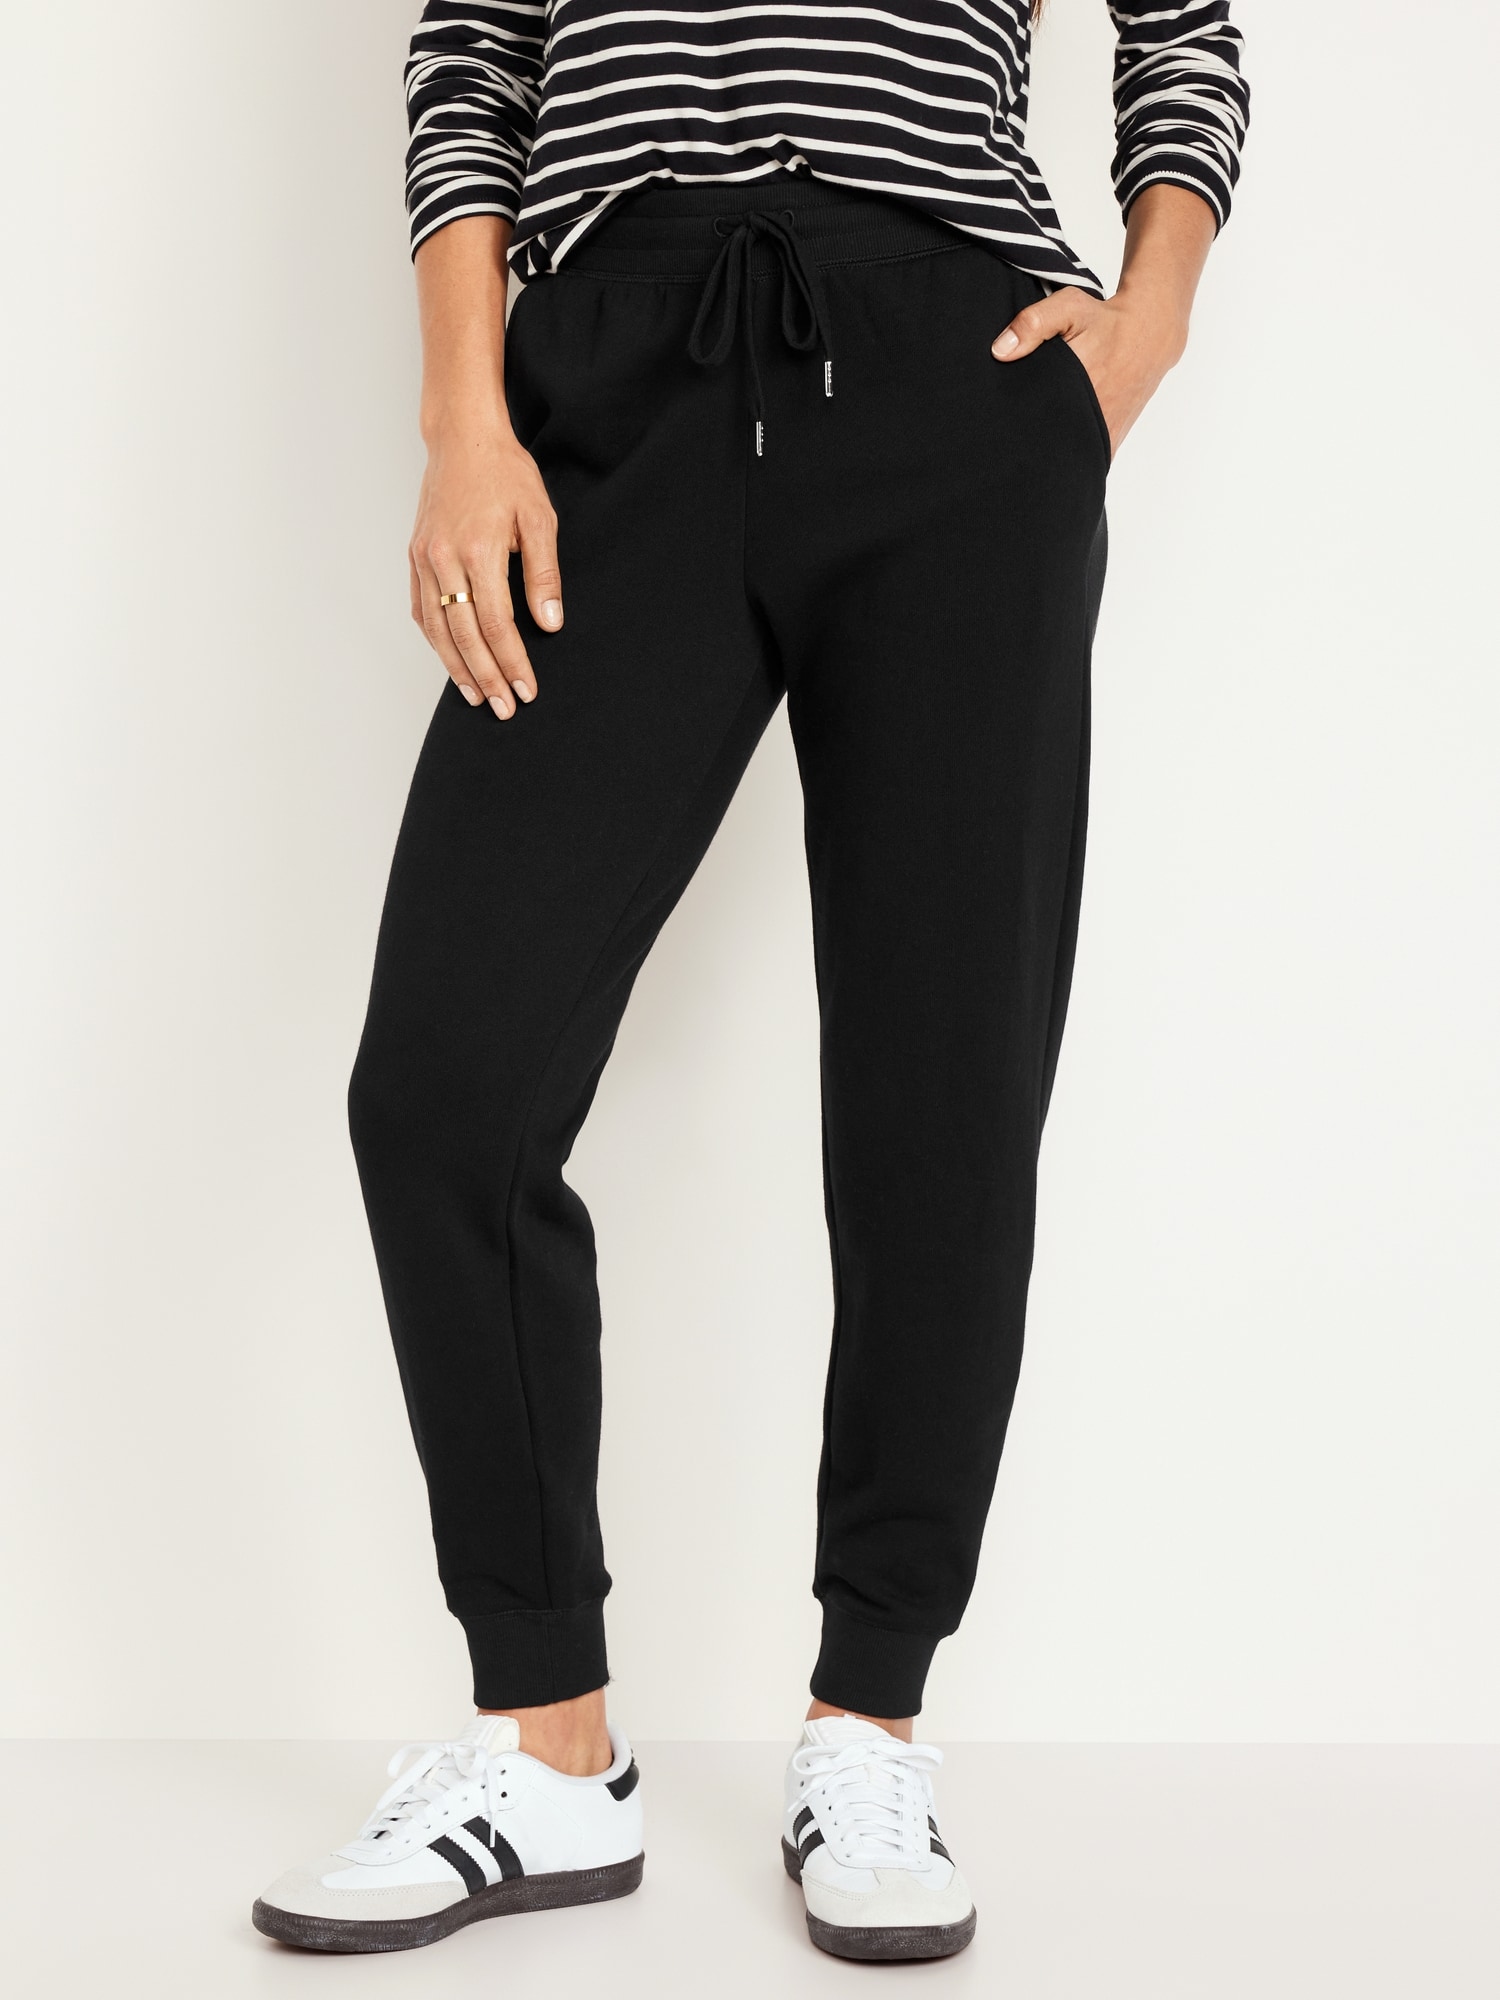 Ladies Sweatpants Light Fleece Pockets Slim Fit W/NAIT 62 - shop at NAIT